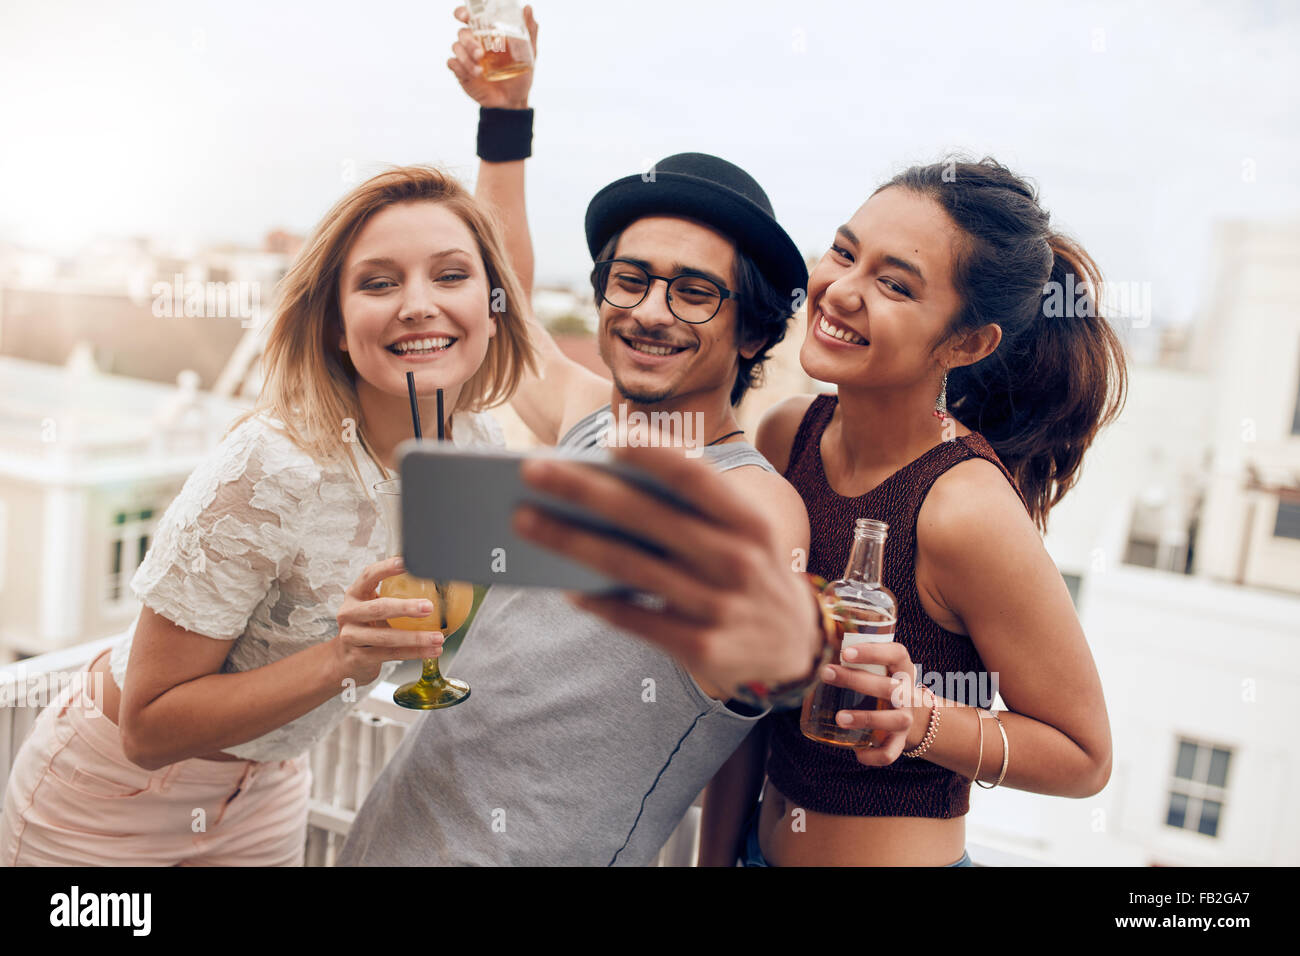 Drei junge Freunde Selbstbildnis mit Smartphone während einer Party nehmen. Glücklicher junger Mann und Frau unter Selfie Pari auf dem Dach Stockfoto